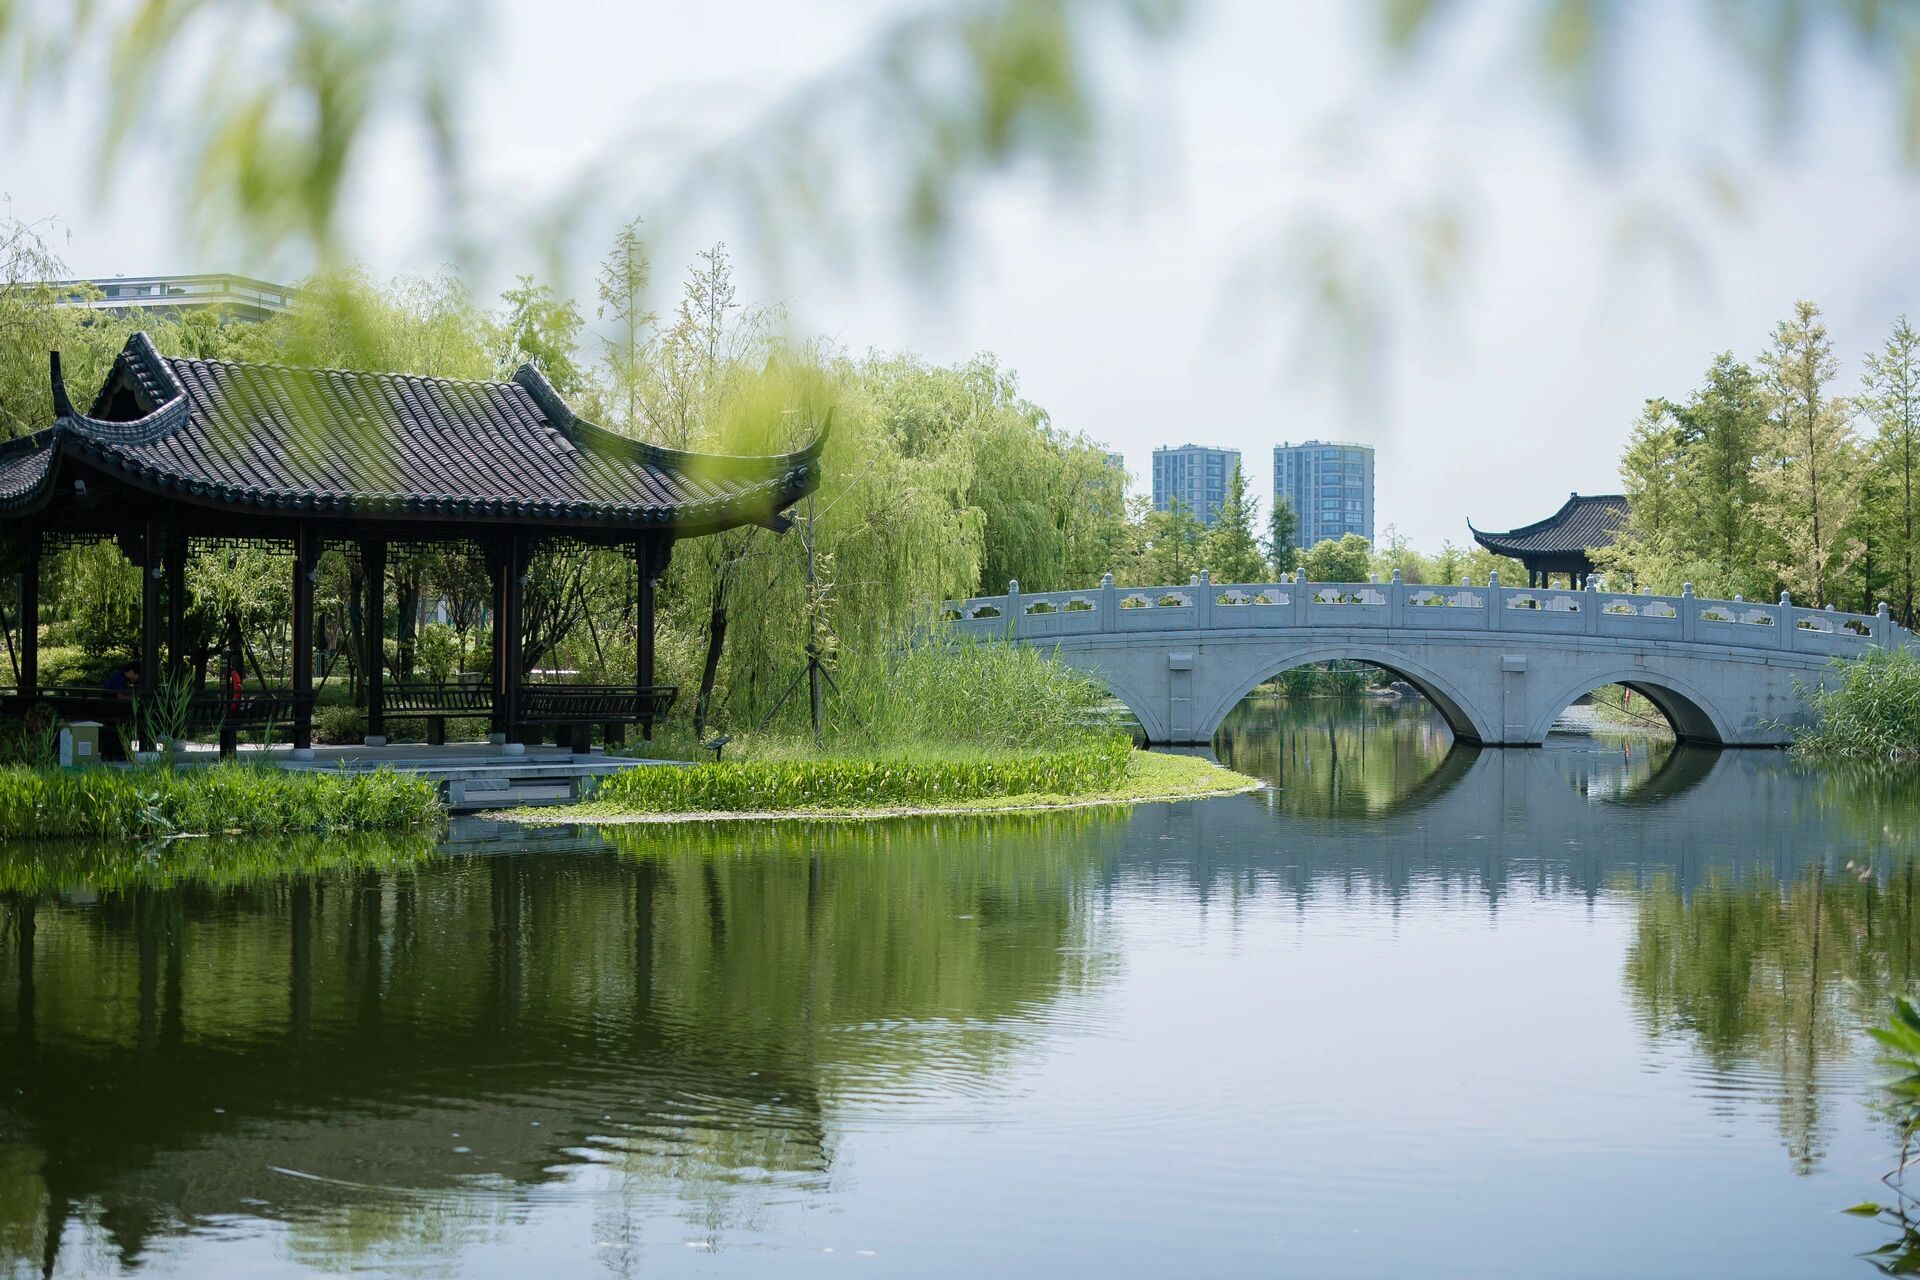 杭州桃花湖公园北区婚庆产业园全景风貌 桃花湖北区是杭州城市土地